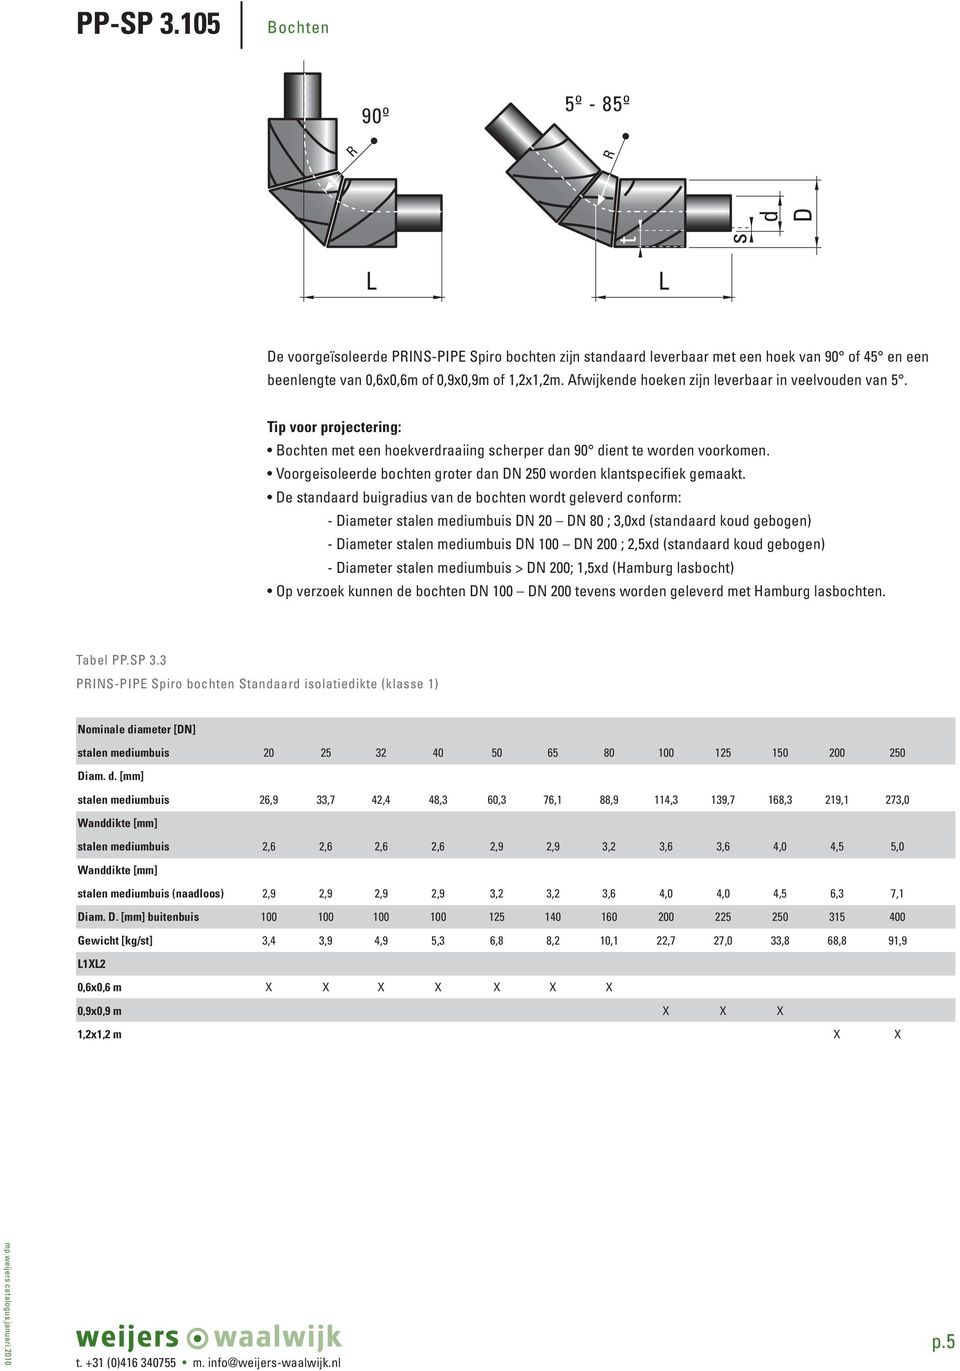 Voorgeisoleerde bochten groter dan DN 250 worden klantspecifiek gemaakt.